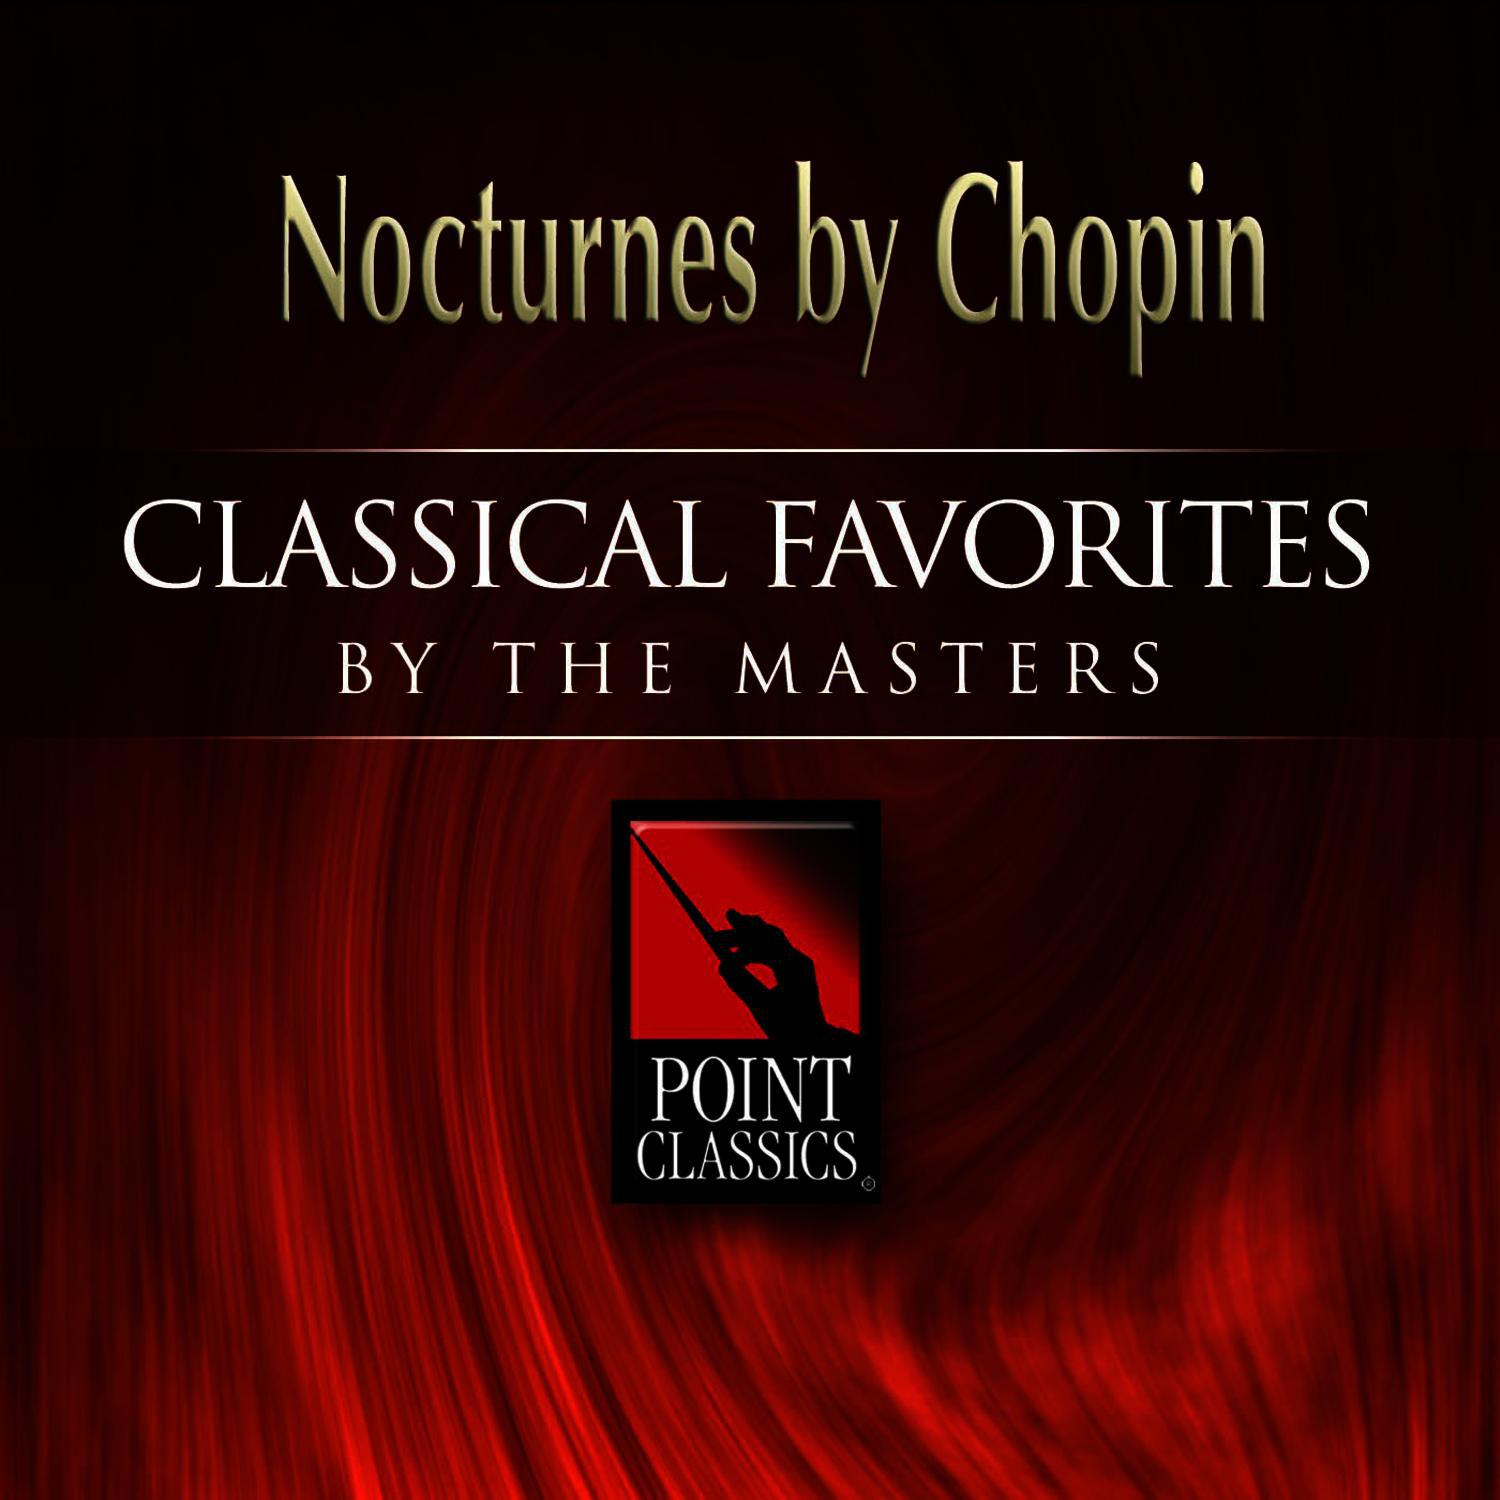 Nocturne No. 1 in B flat minor, Op. 9/1